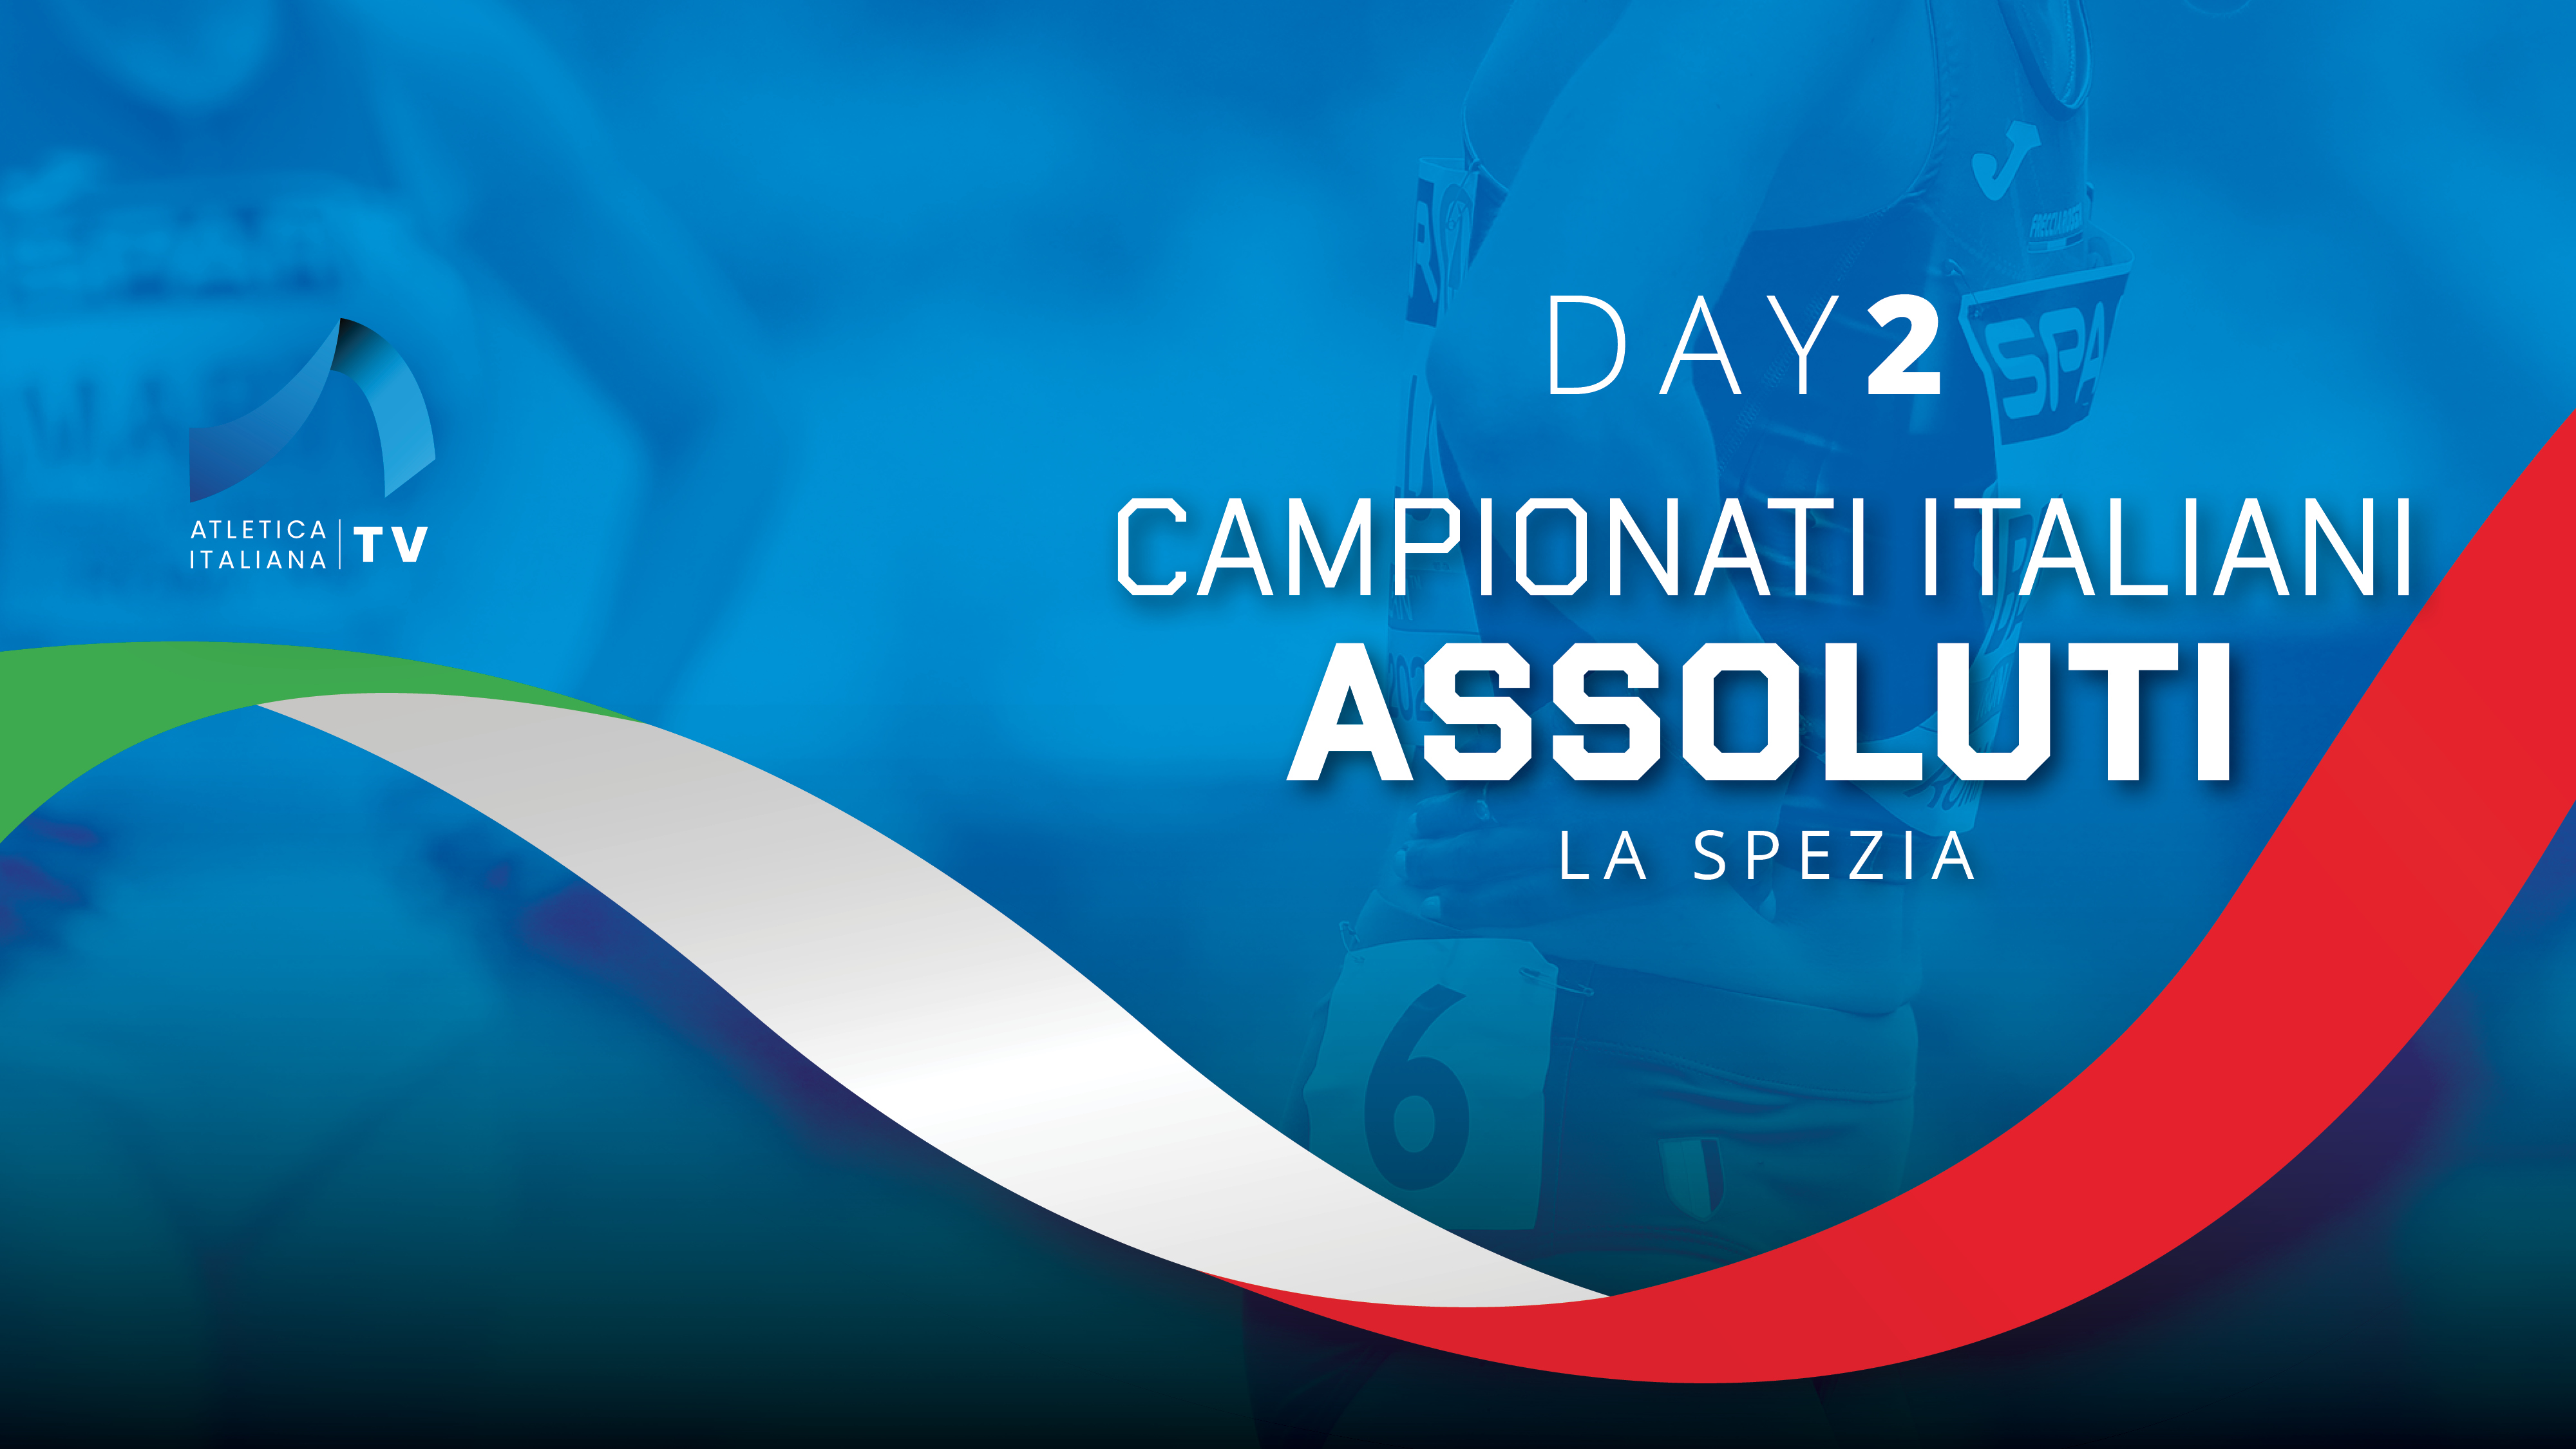 Campionati Italiani Assoluti - La Spezia - Day 2